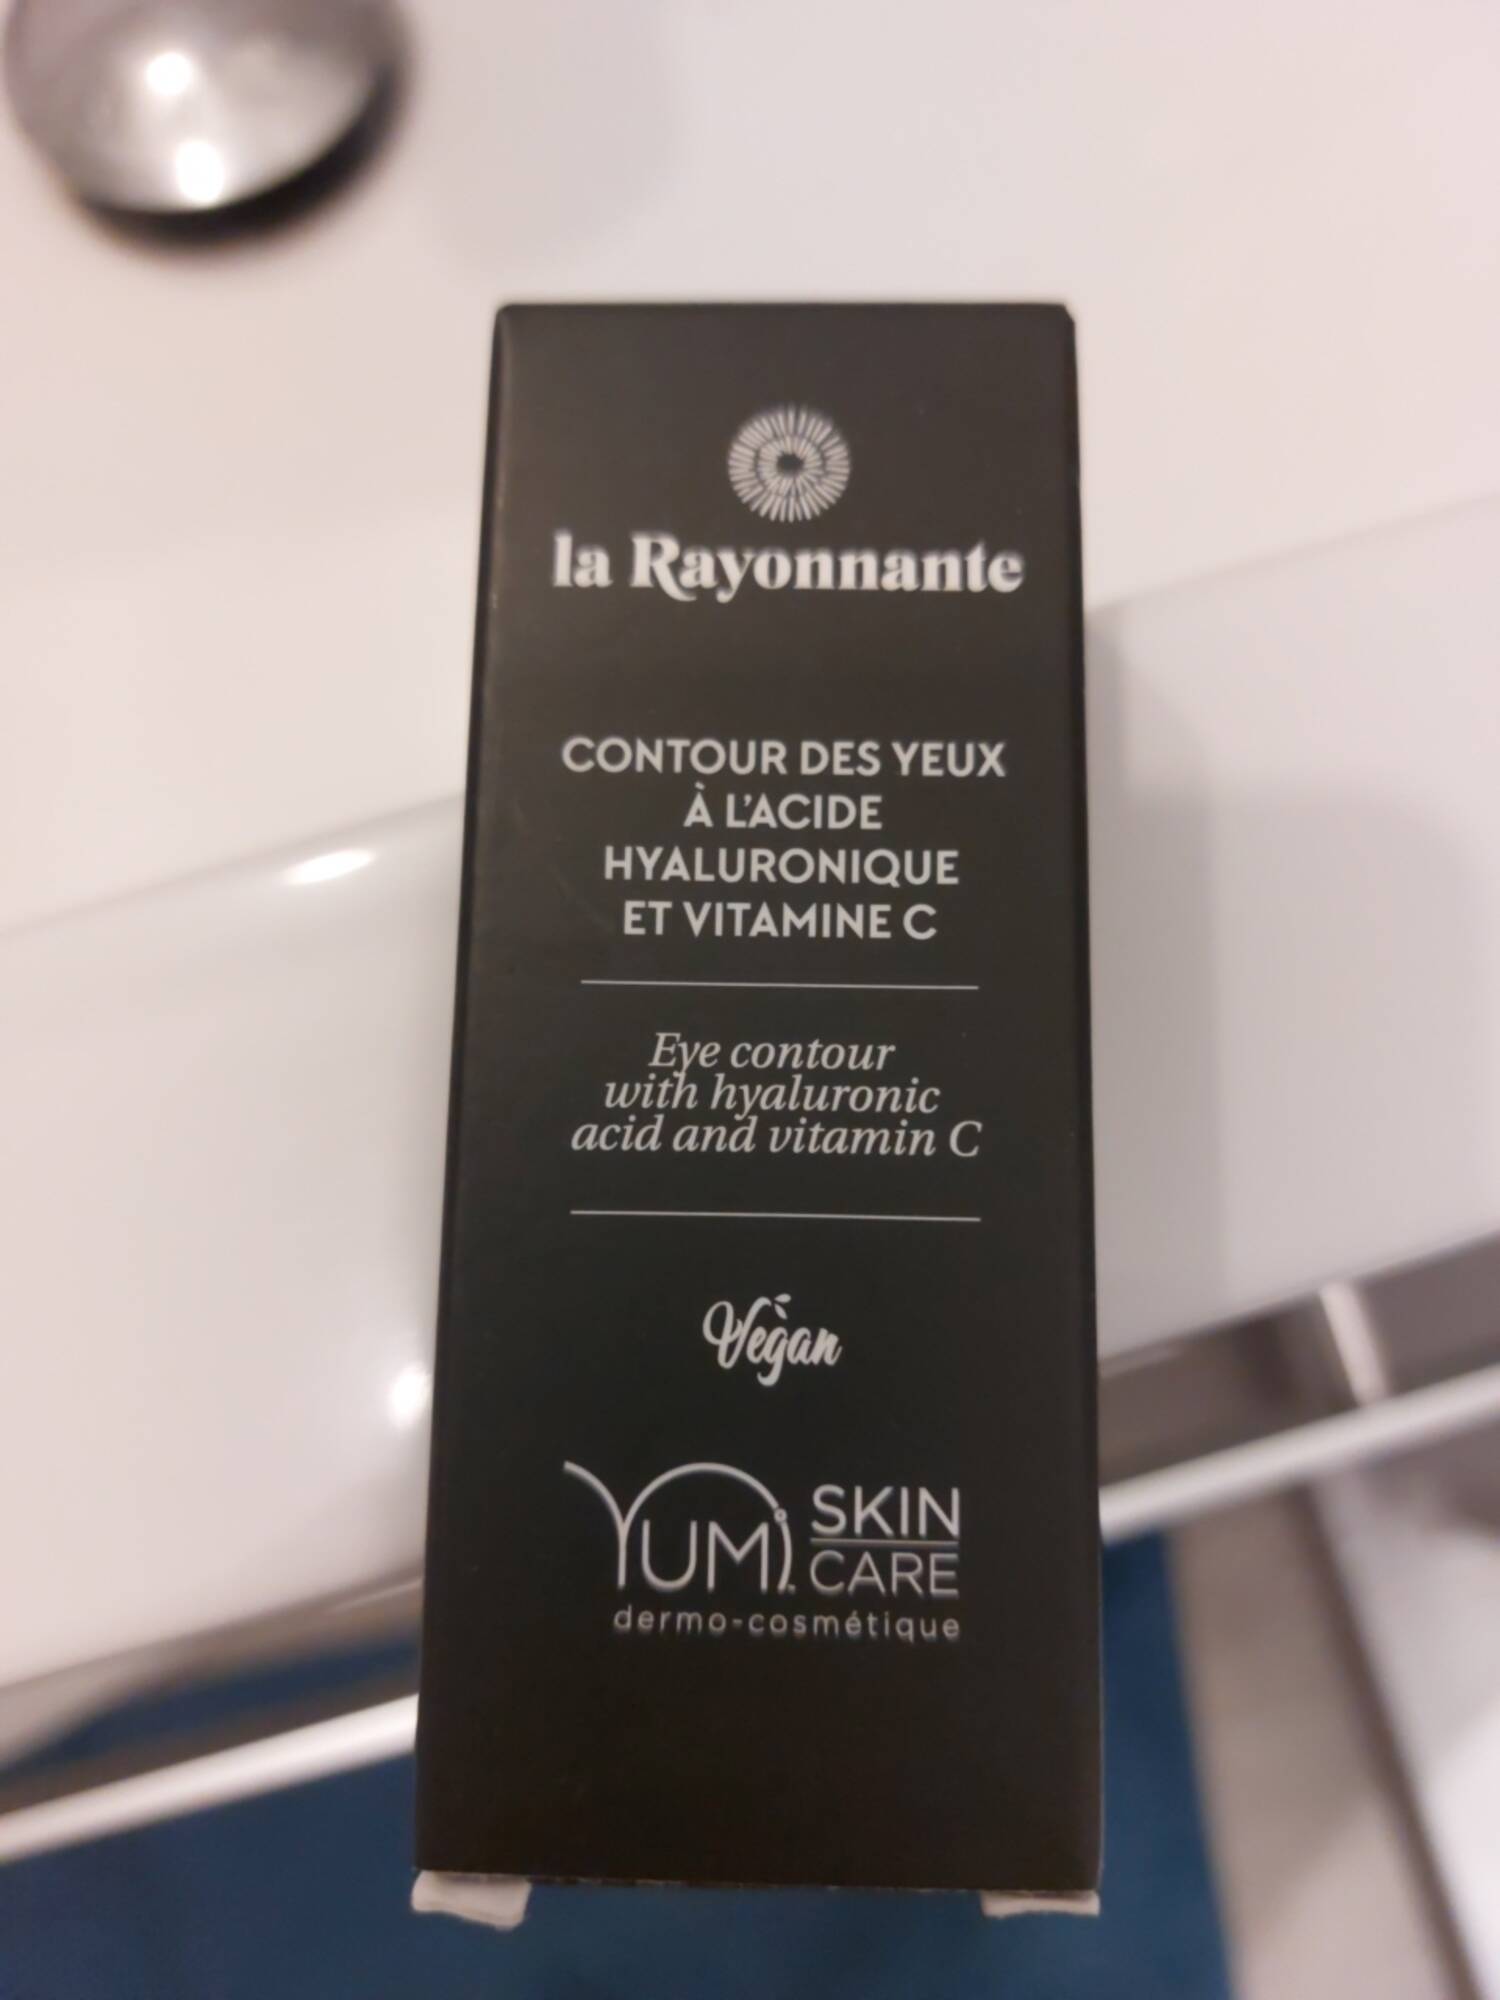 LA RAYONNANTE - Contour des yeux à l'acide hyaluronique et vitamine C